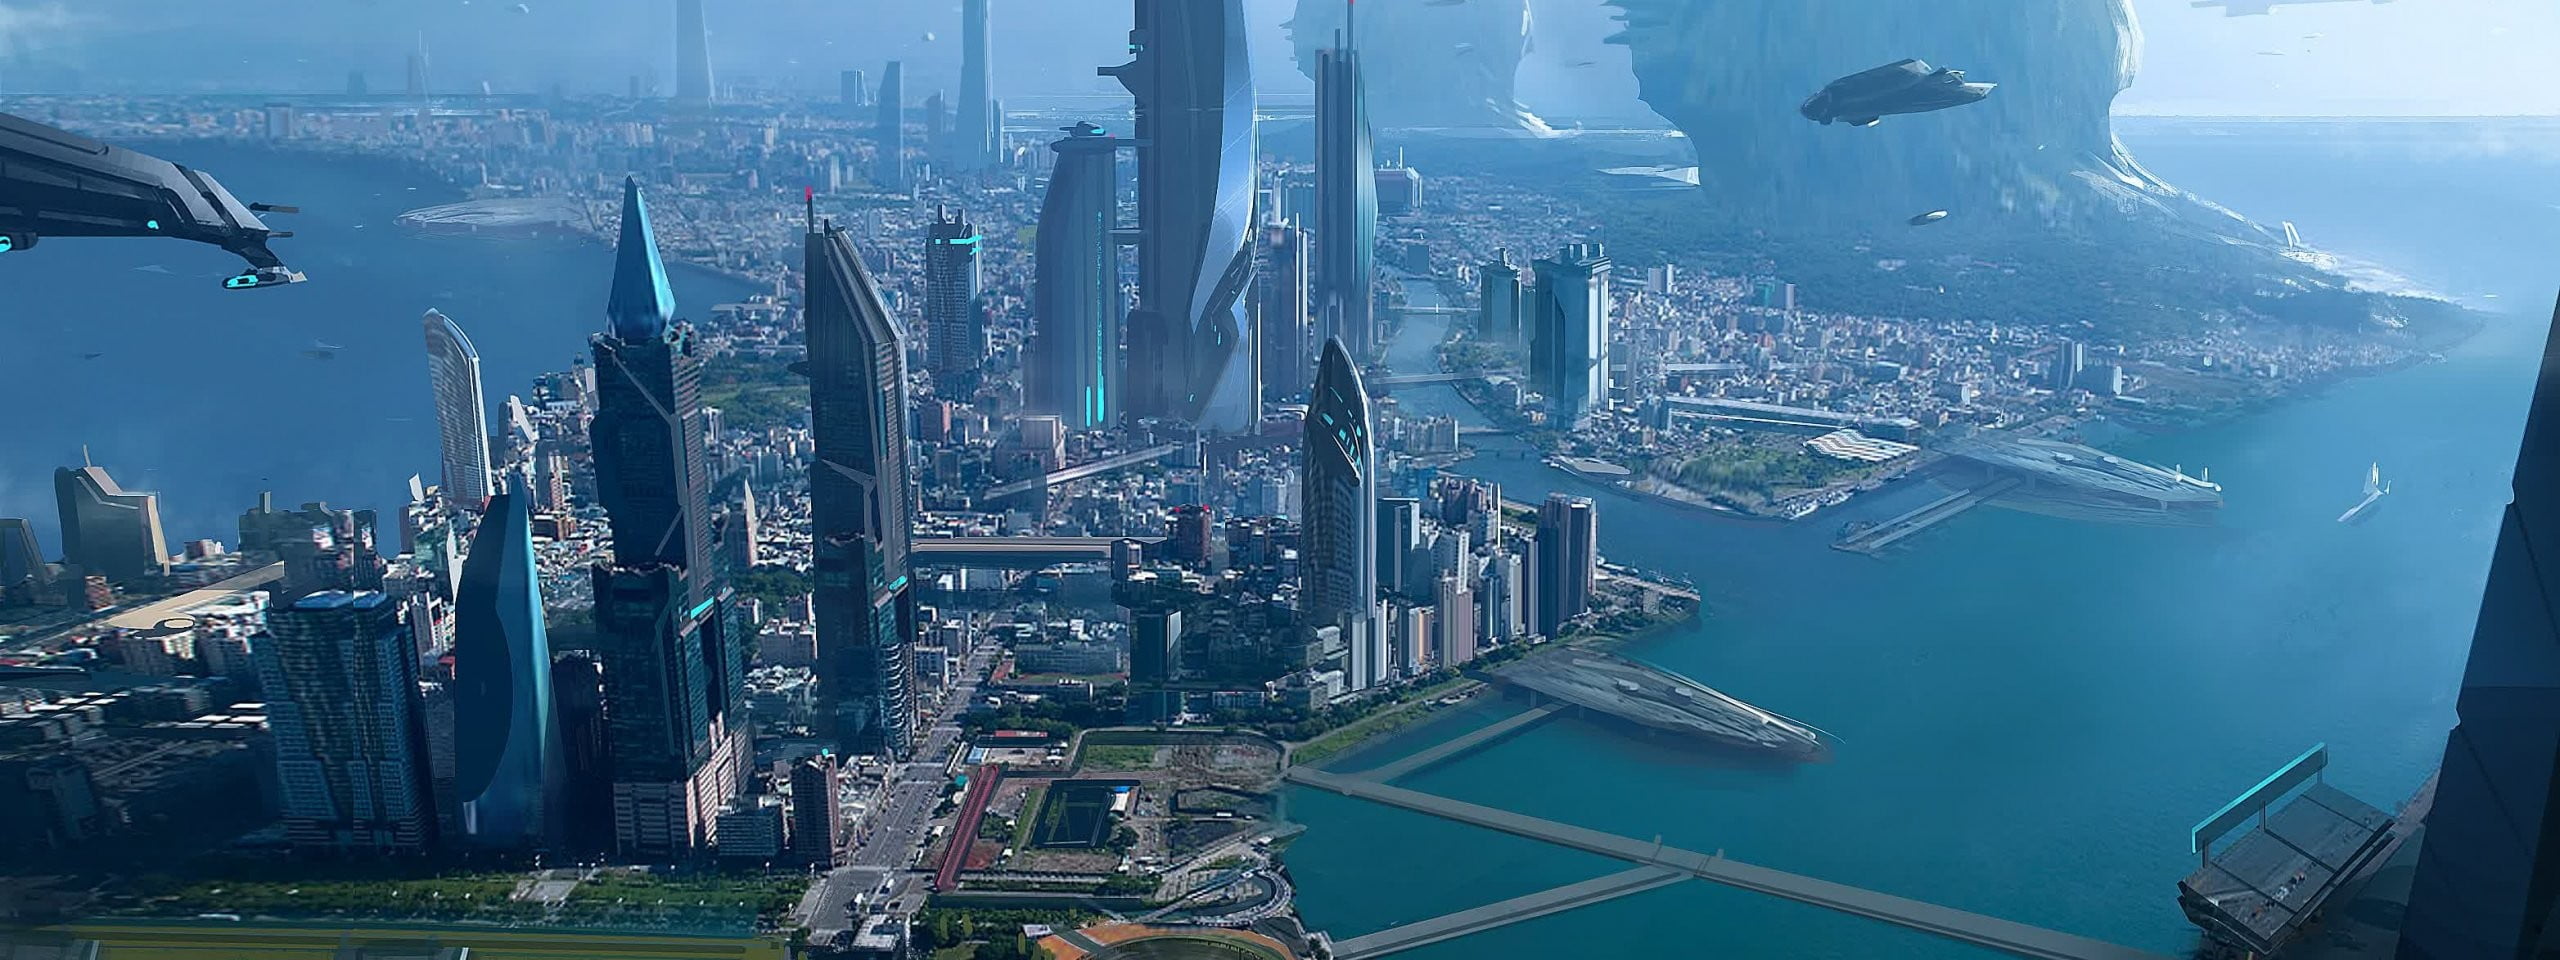 city 3D wallpaper, Star Citizen, science fiction, space, building exterior